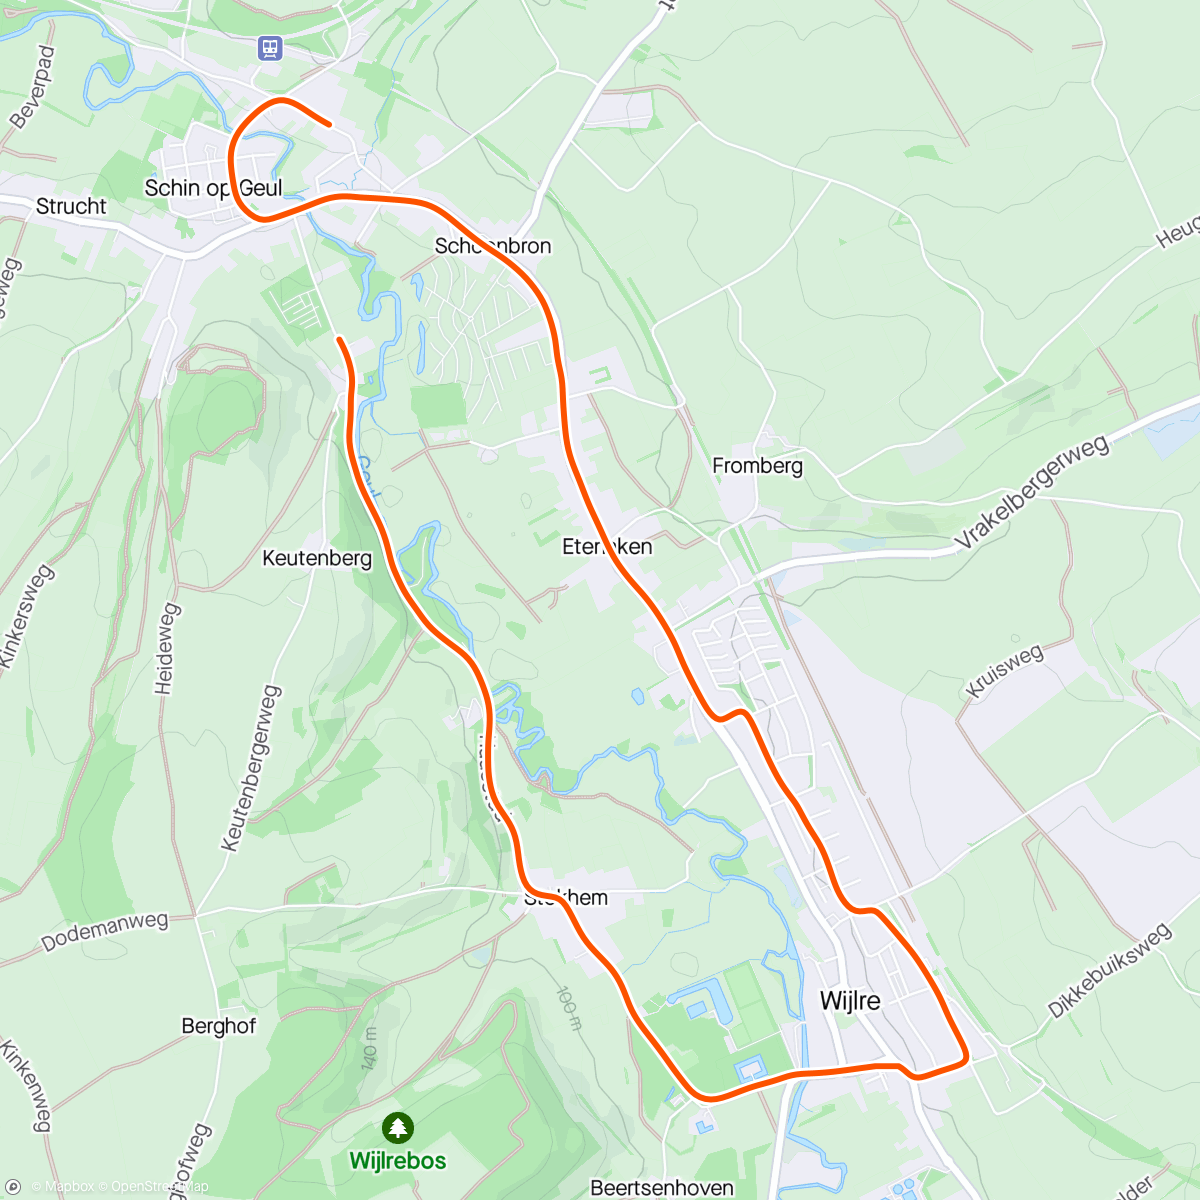 Map of the activity, Fietskleier aan, sjtap op fiets, SRAM leàg… dan mer rundje rennen langs de Geul